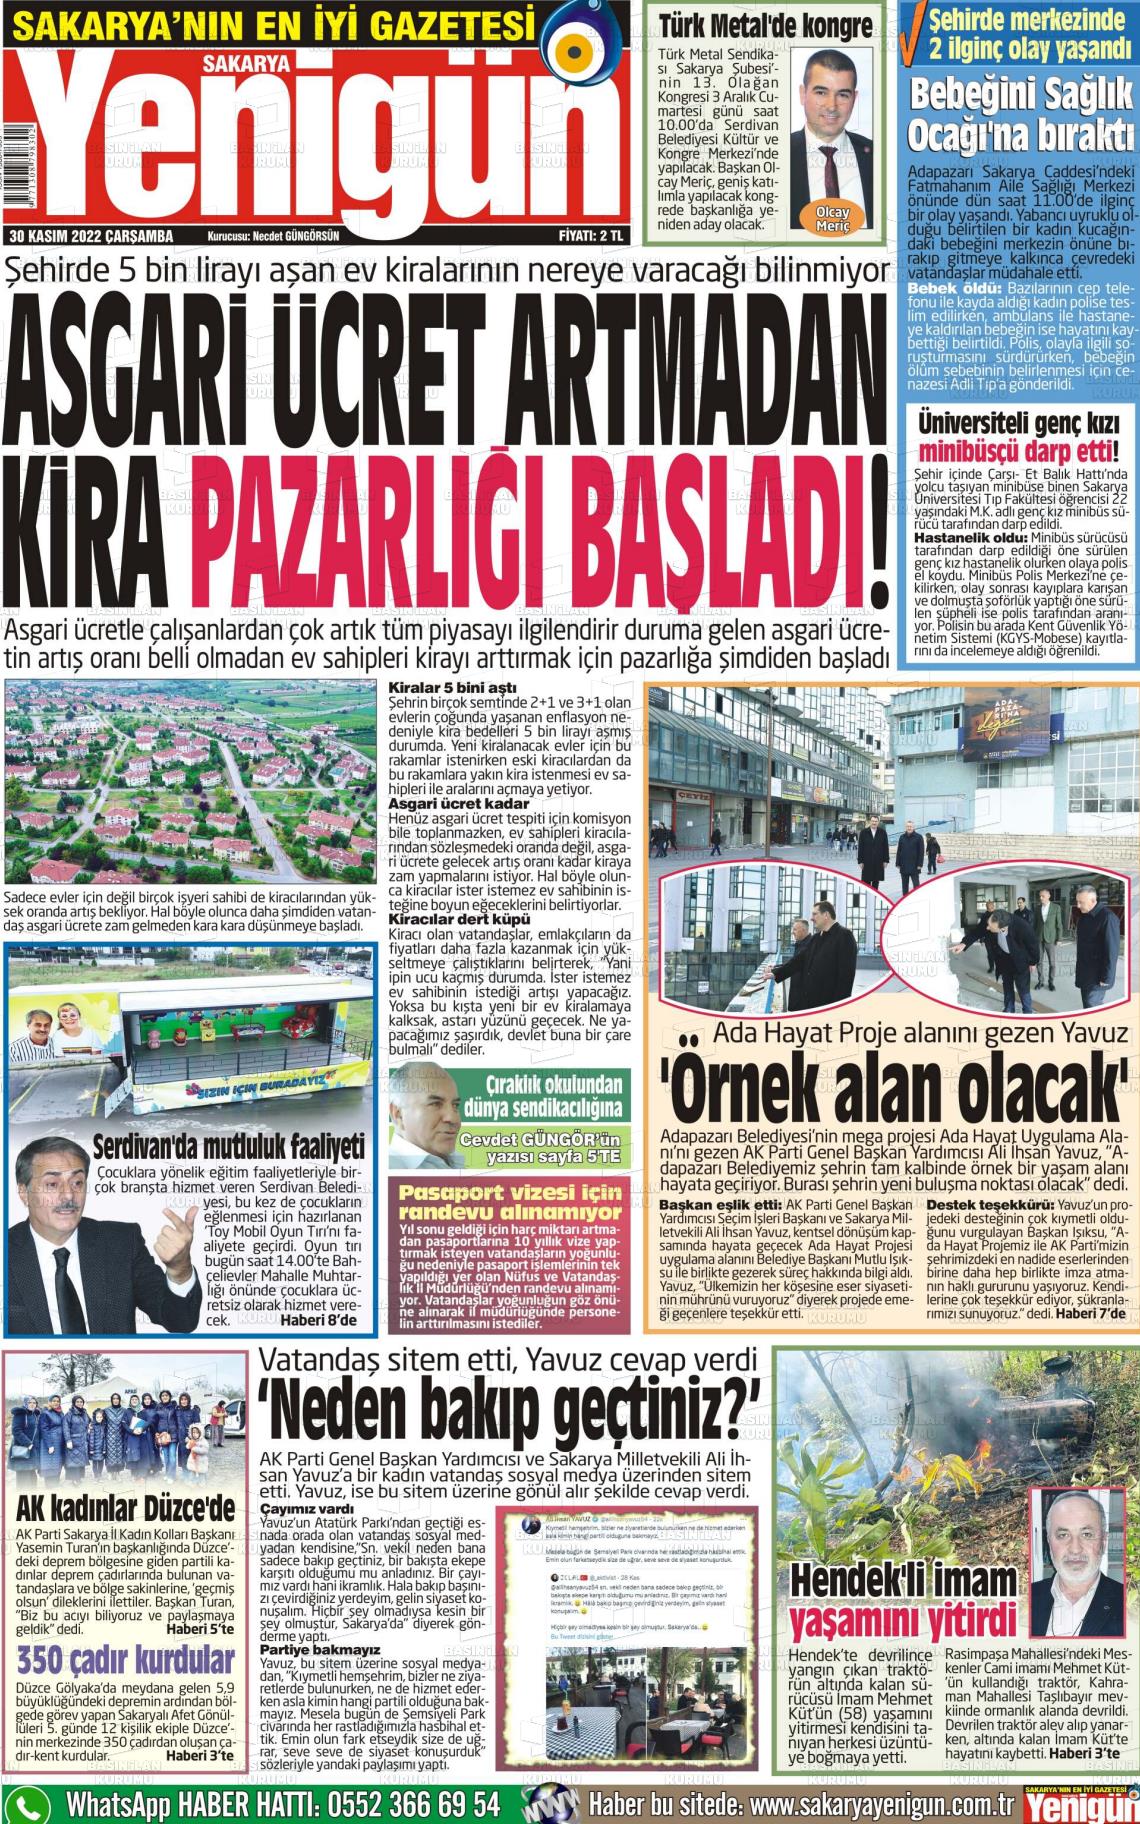 30 Kasım 2022 Sakarya Yenigün Gazete Manşeti